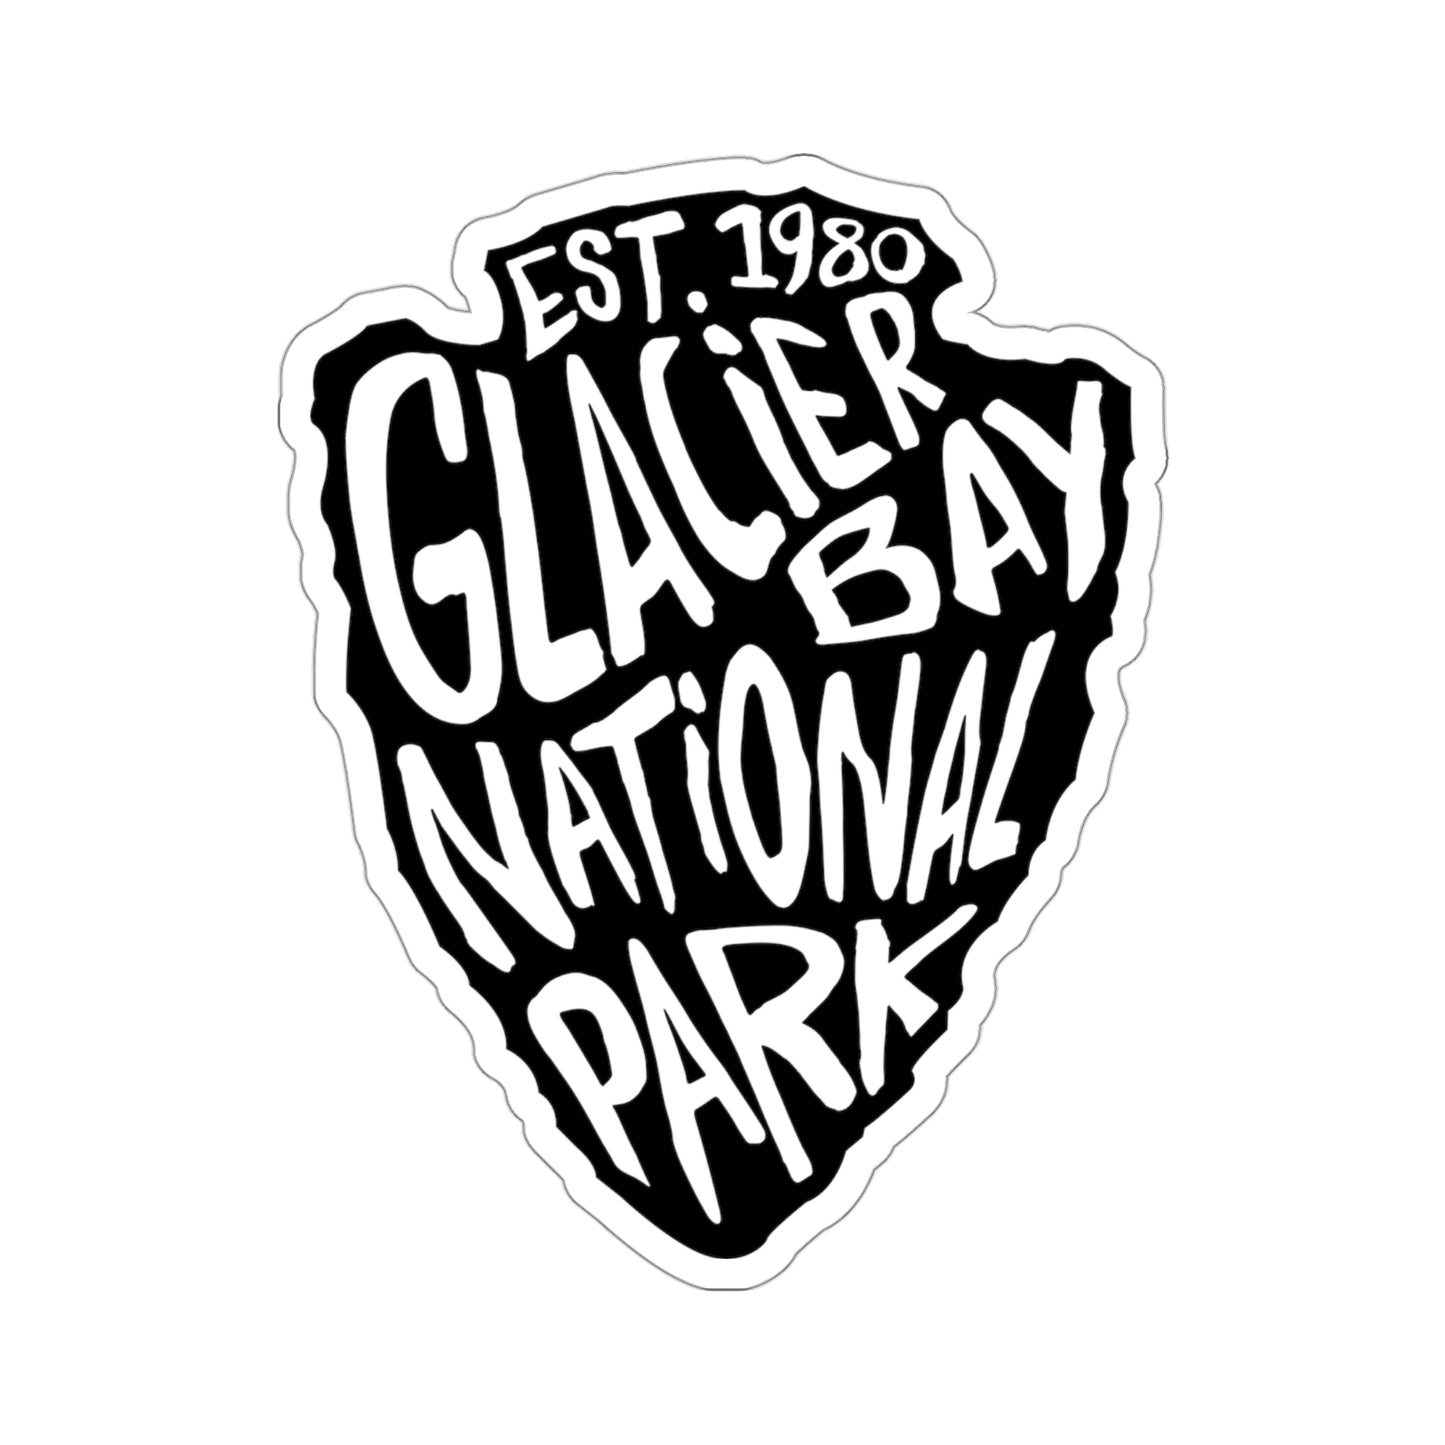 Glacier Bay National Park Sticker - Arrow Head Design